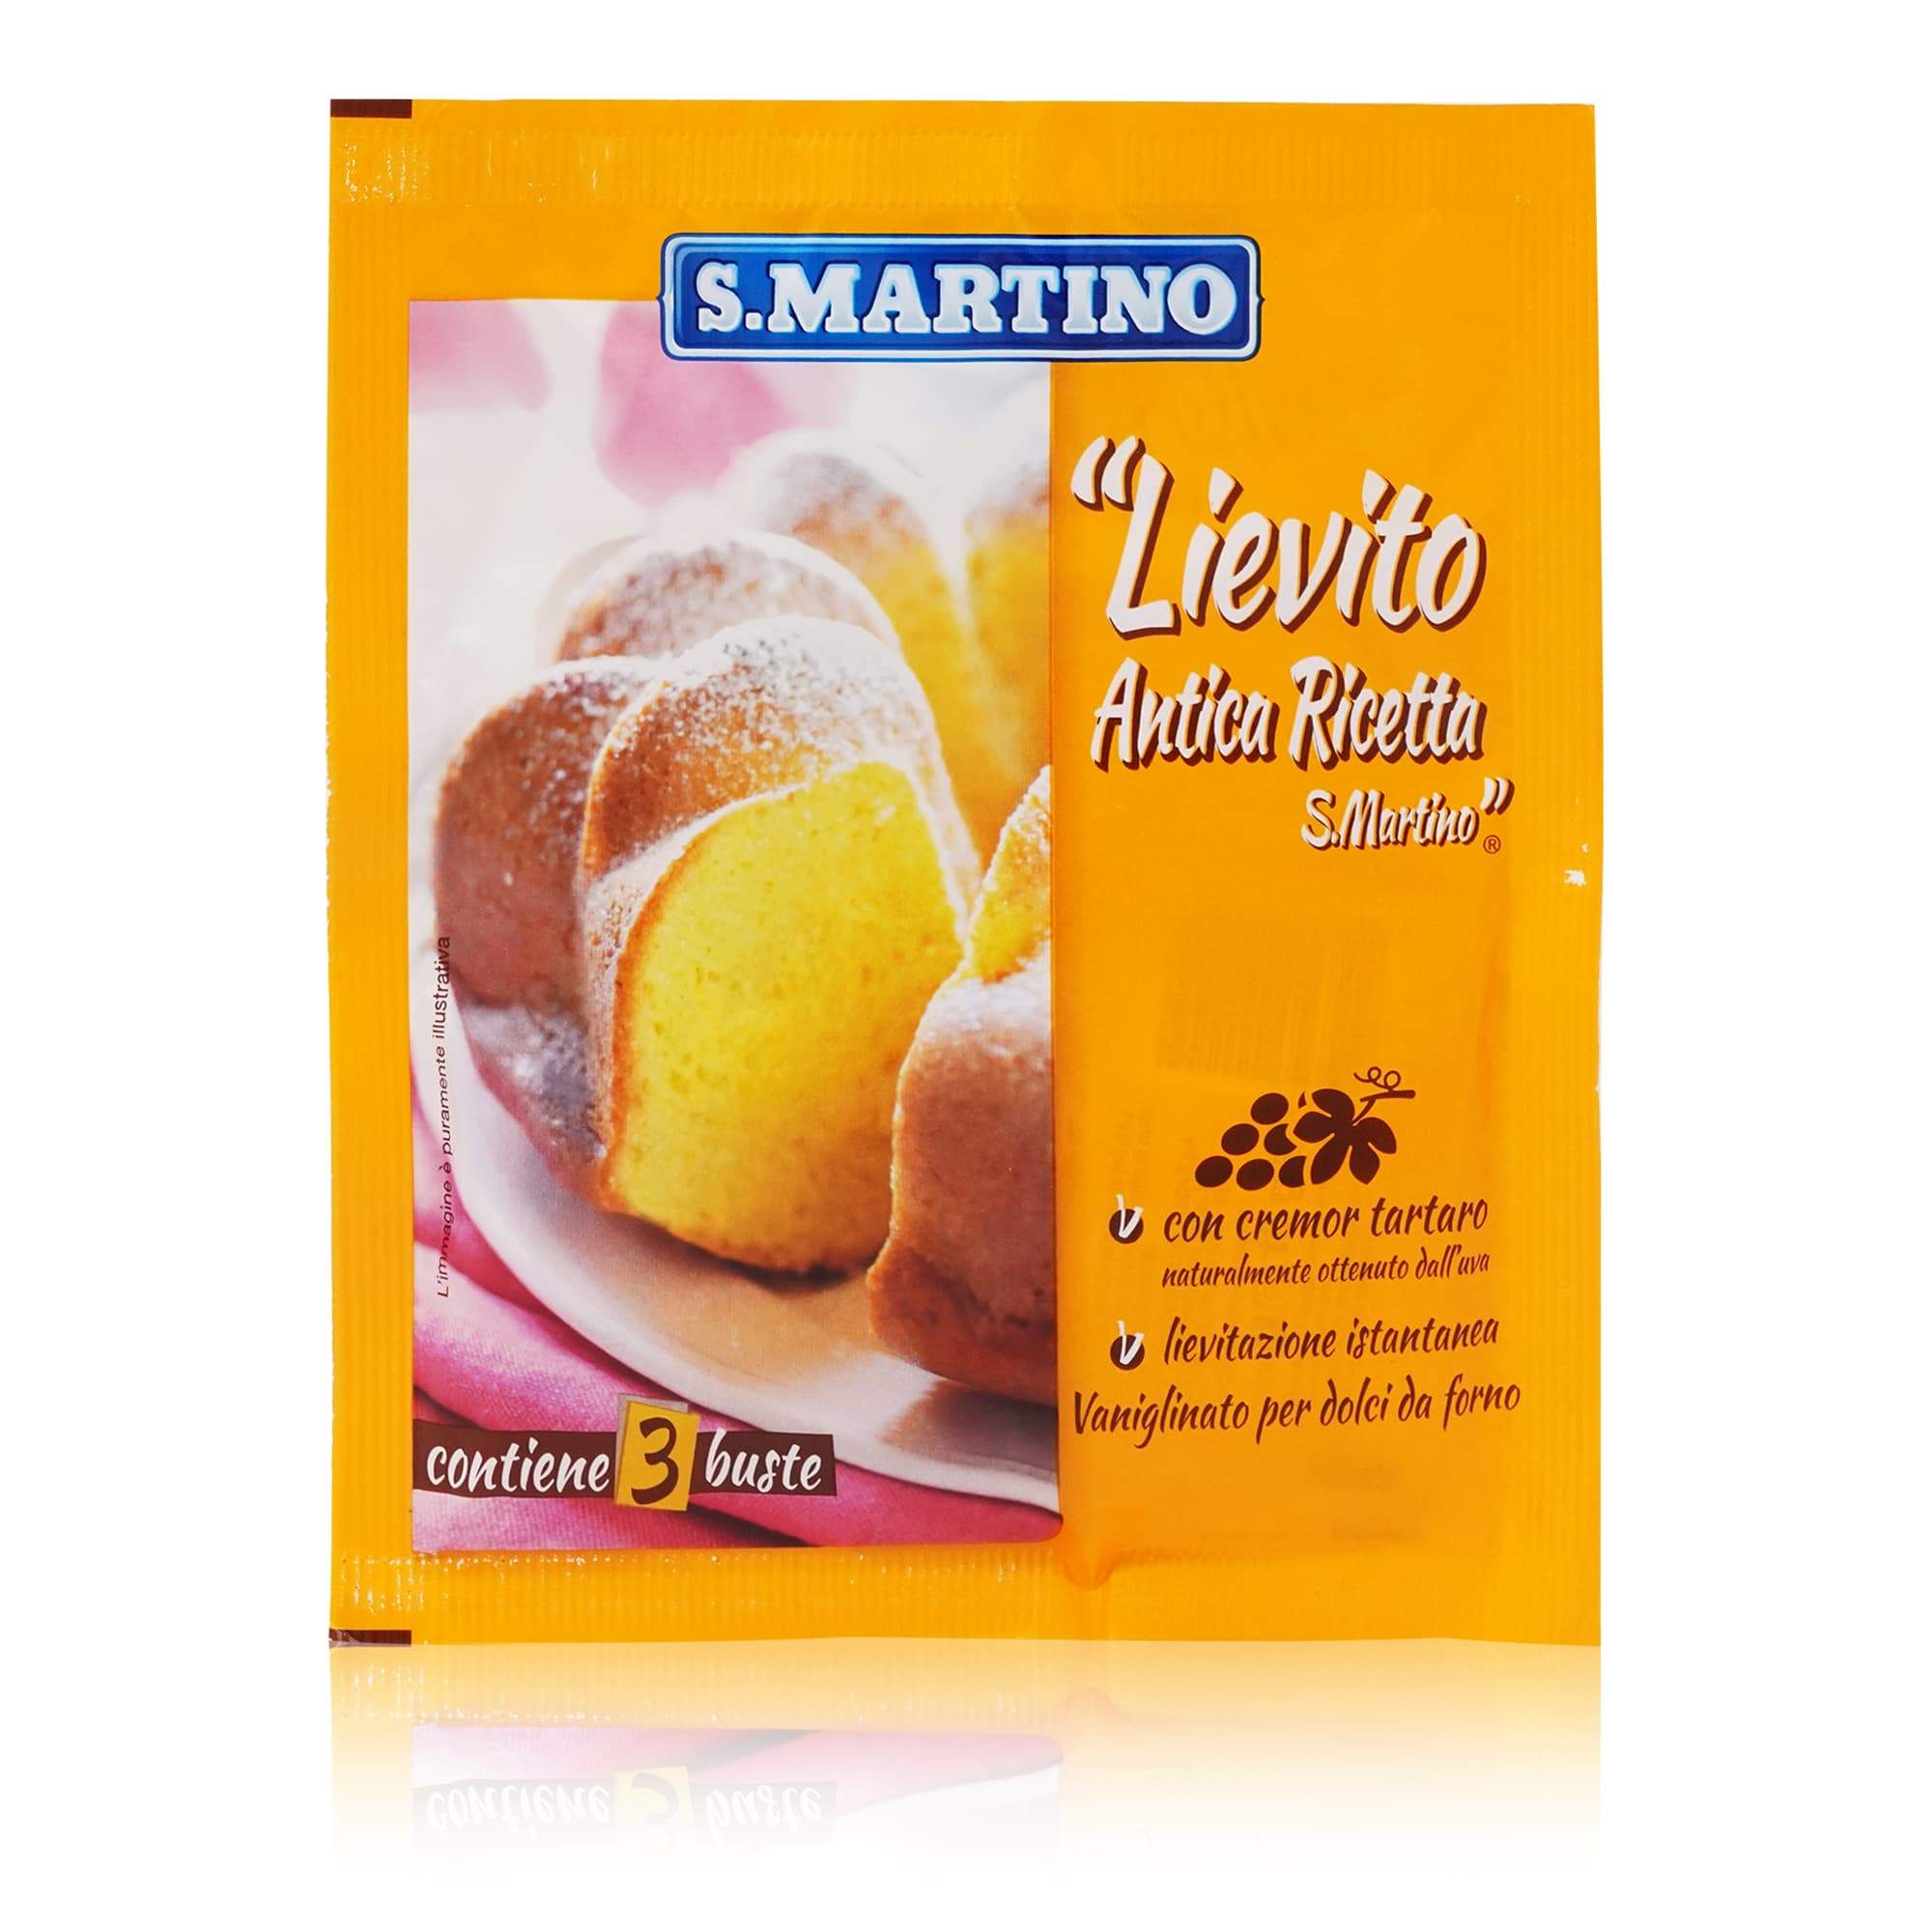 S.MARTINO Lievito per torte "Antica ricetta" – Weinstein-Backpulver für Torten - 0,048kg - italienisch-einkaufen.de